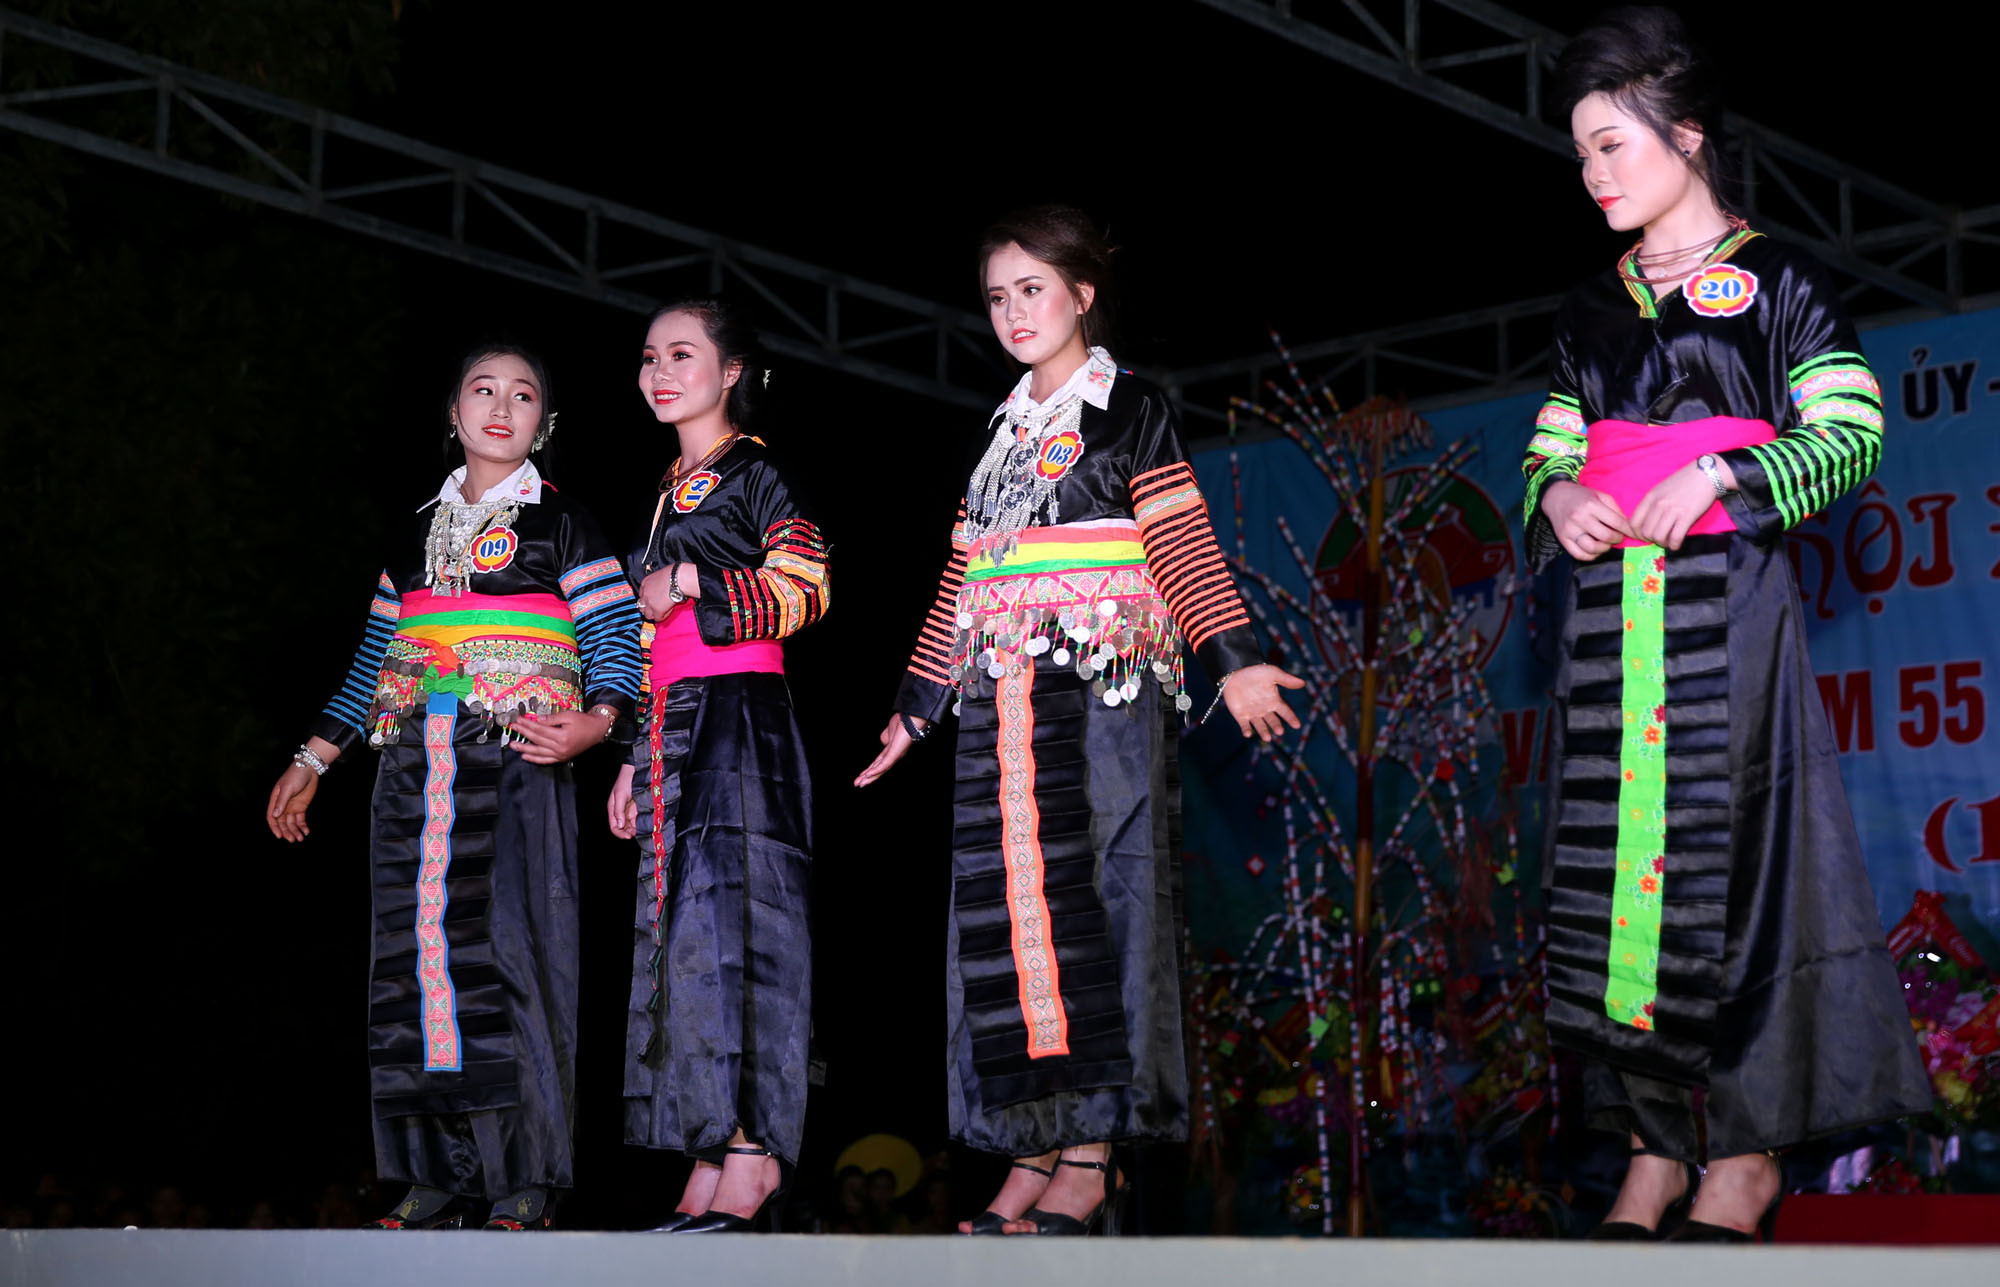 Trang phục của người phụ nữ dân tộc Mông luôn rất sặc sỡ, độc đáo khác thường. Để làm được một bộ trang phục hoàn chỉnh thì mất rất nhiều thời gian và công sức của các bà, các mẹ, các chị và những người thợ. Sự tài tình của phụ nữ Mông chính là họ có thể làm ra những bộ trang phục của dân tộc mình bằng chính đôi bàn tay khéo léo.